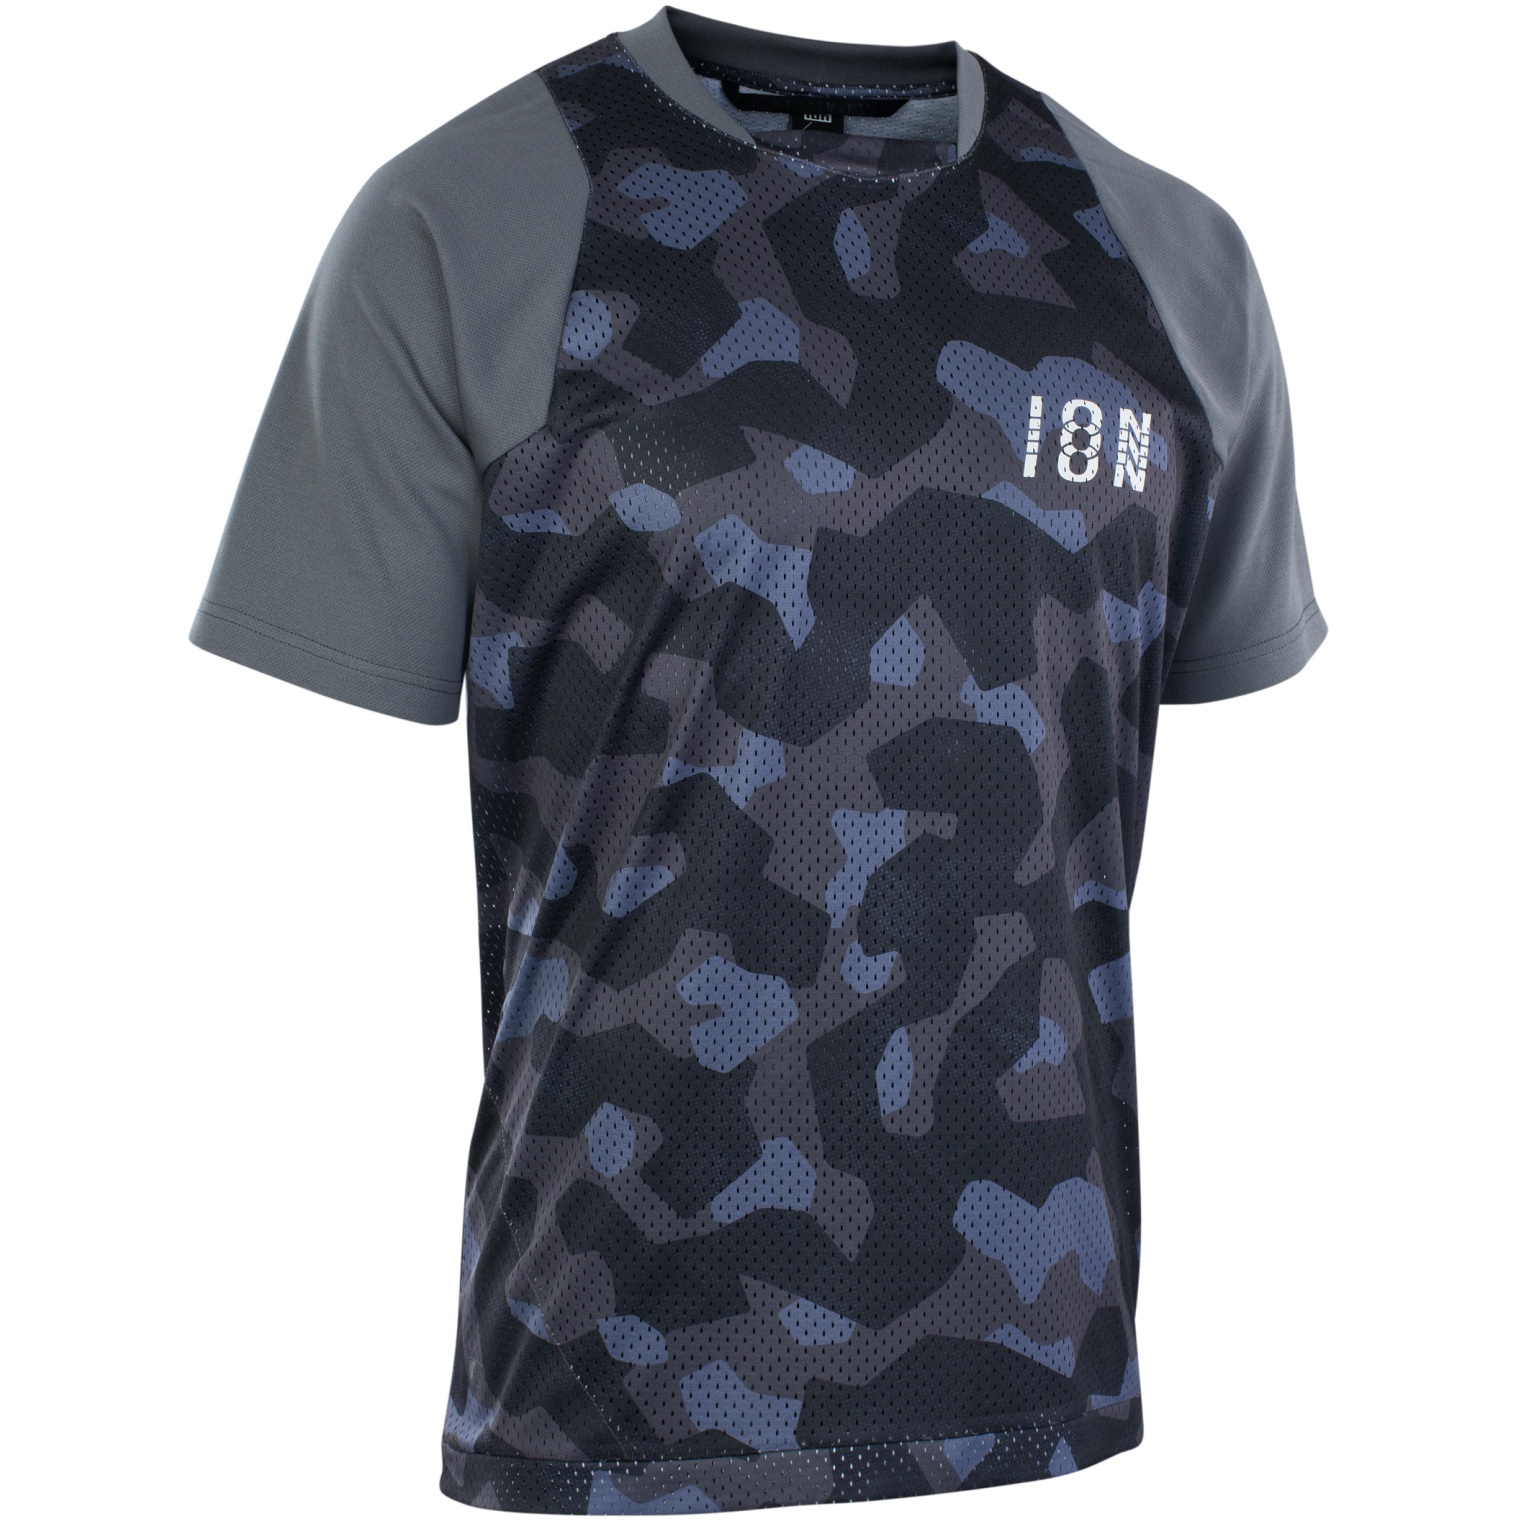 Produktbild von ION Bike T-Shirt Scrub - Grau